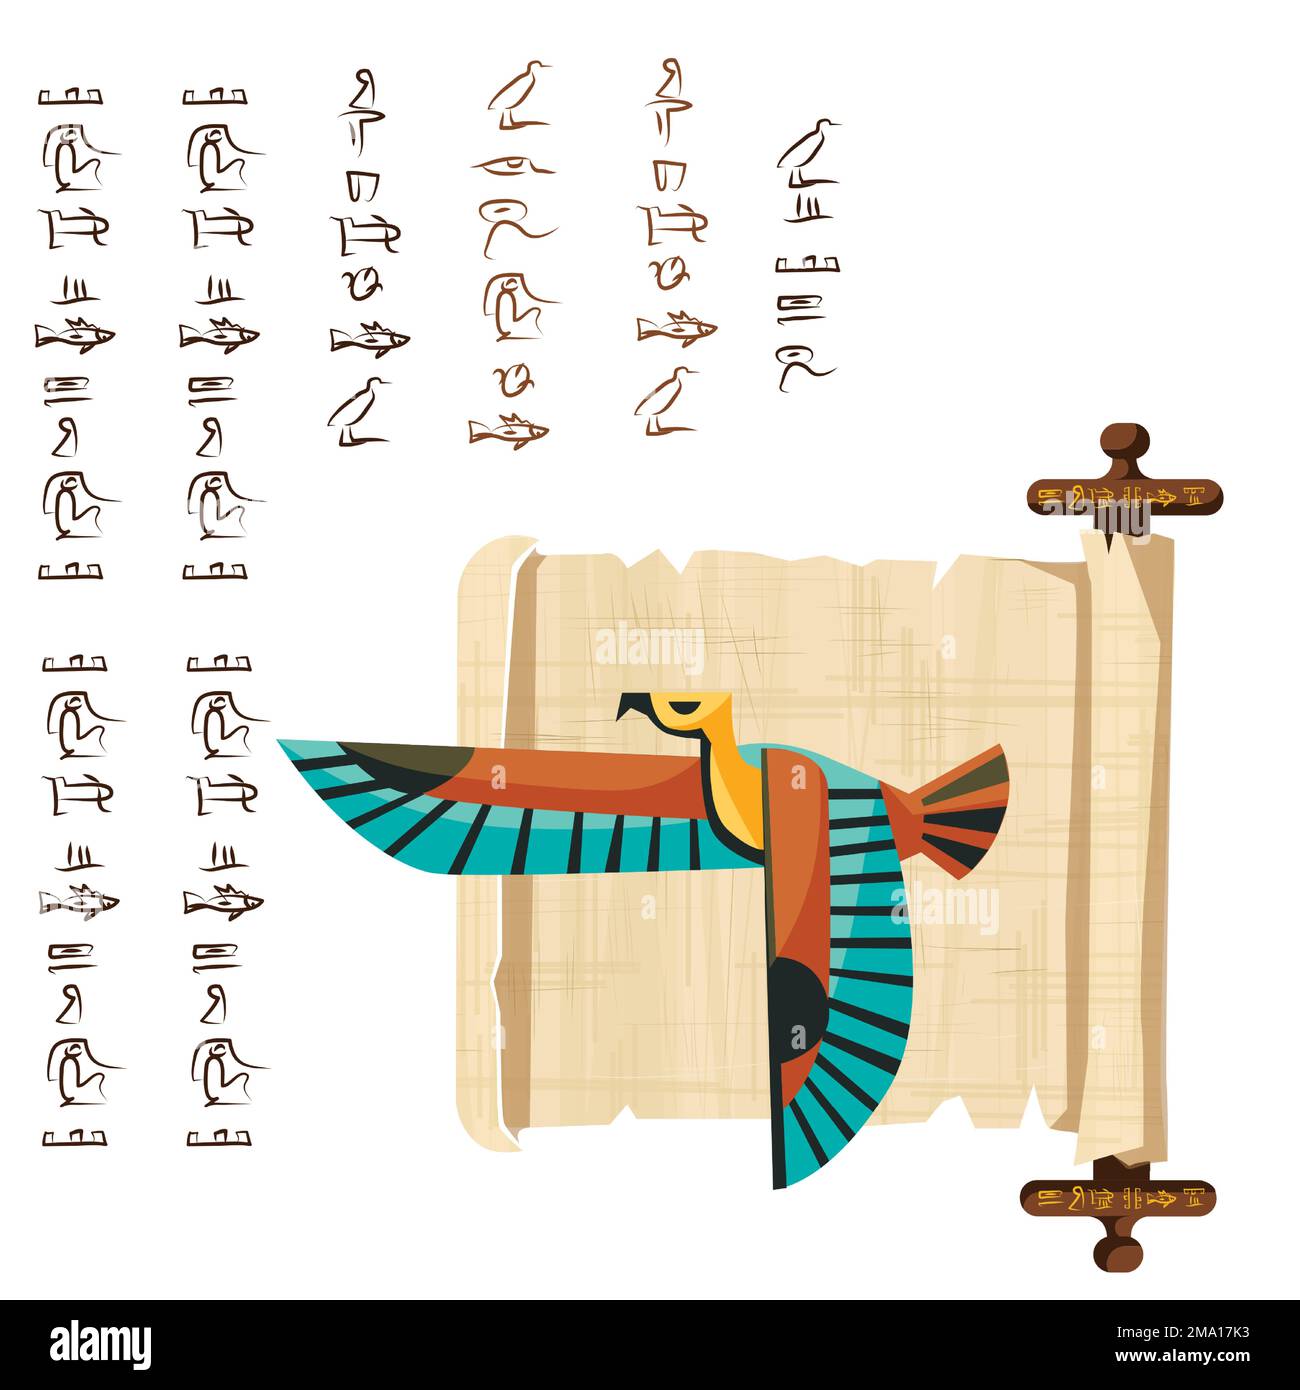 Alte ägyptische Papyrus-Schriftrolle mit Holzstangen-Cartoon-Vektordarstellung. Ägyptisches Kultursymbol, leeres, entfaltetes antikes Papier mit Holzstäbchen, fliegender Falke und Hieroglyphen, isoliert auf Weiß Stock Vektor